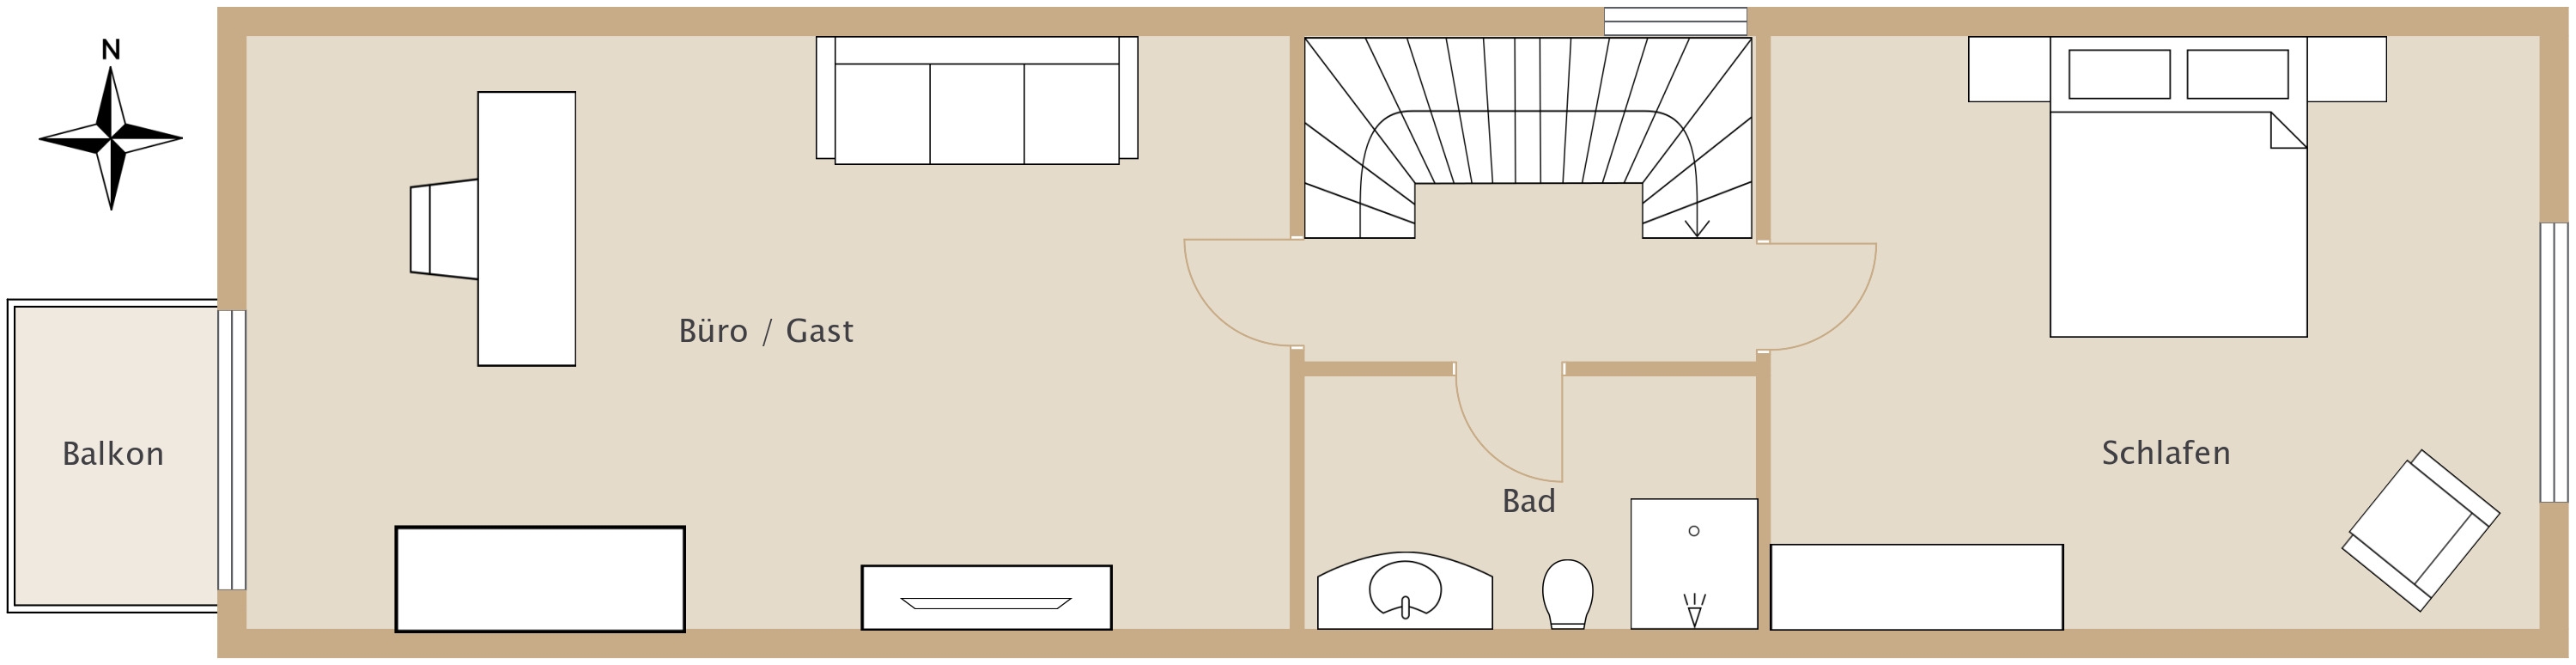 Floor plan attic